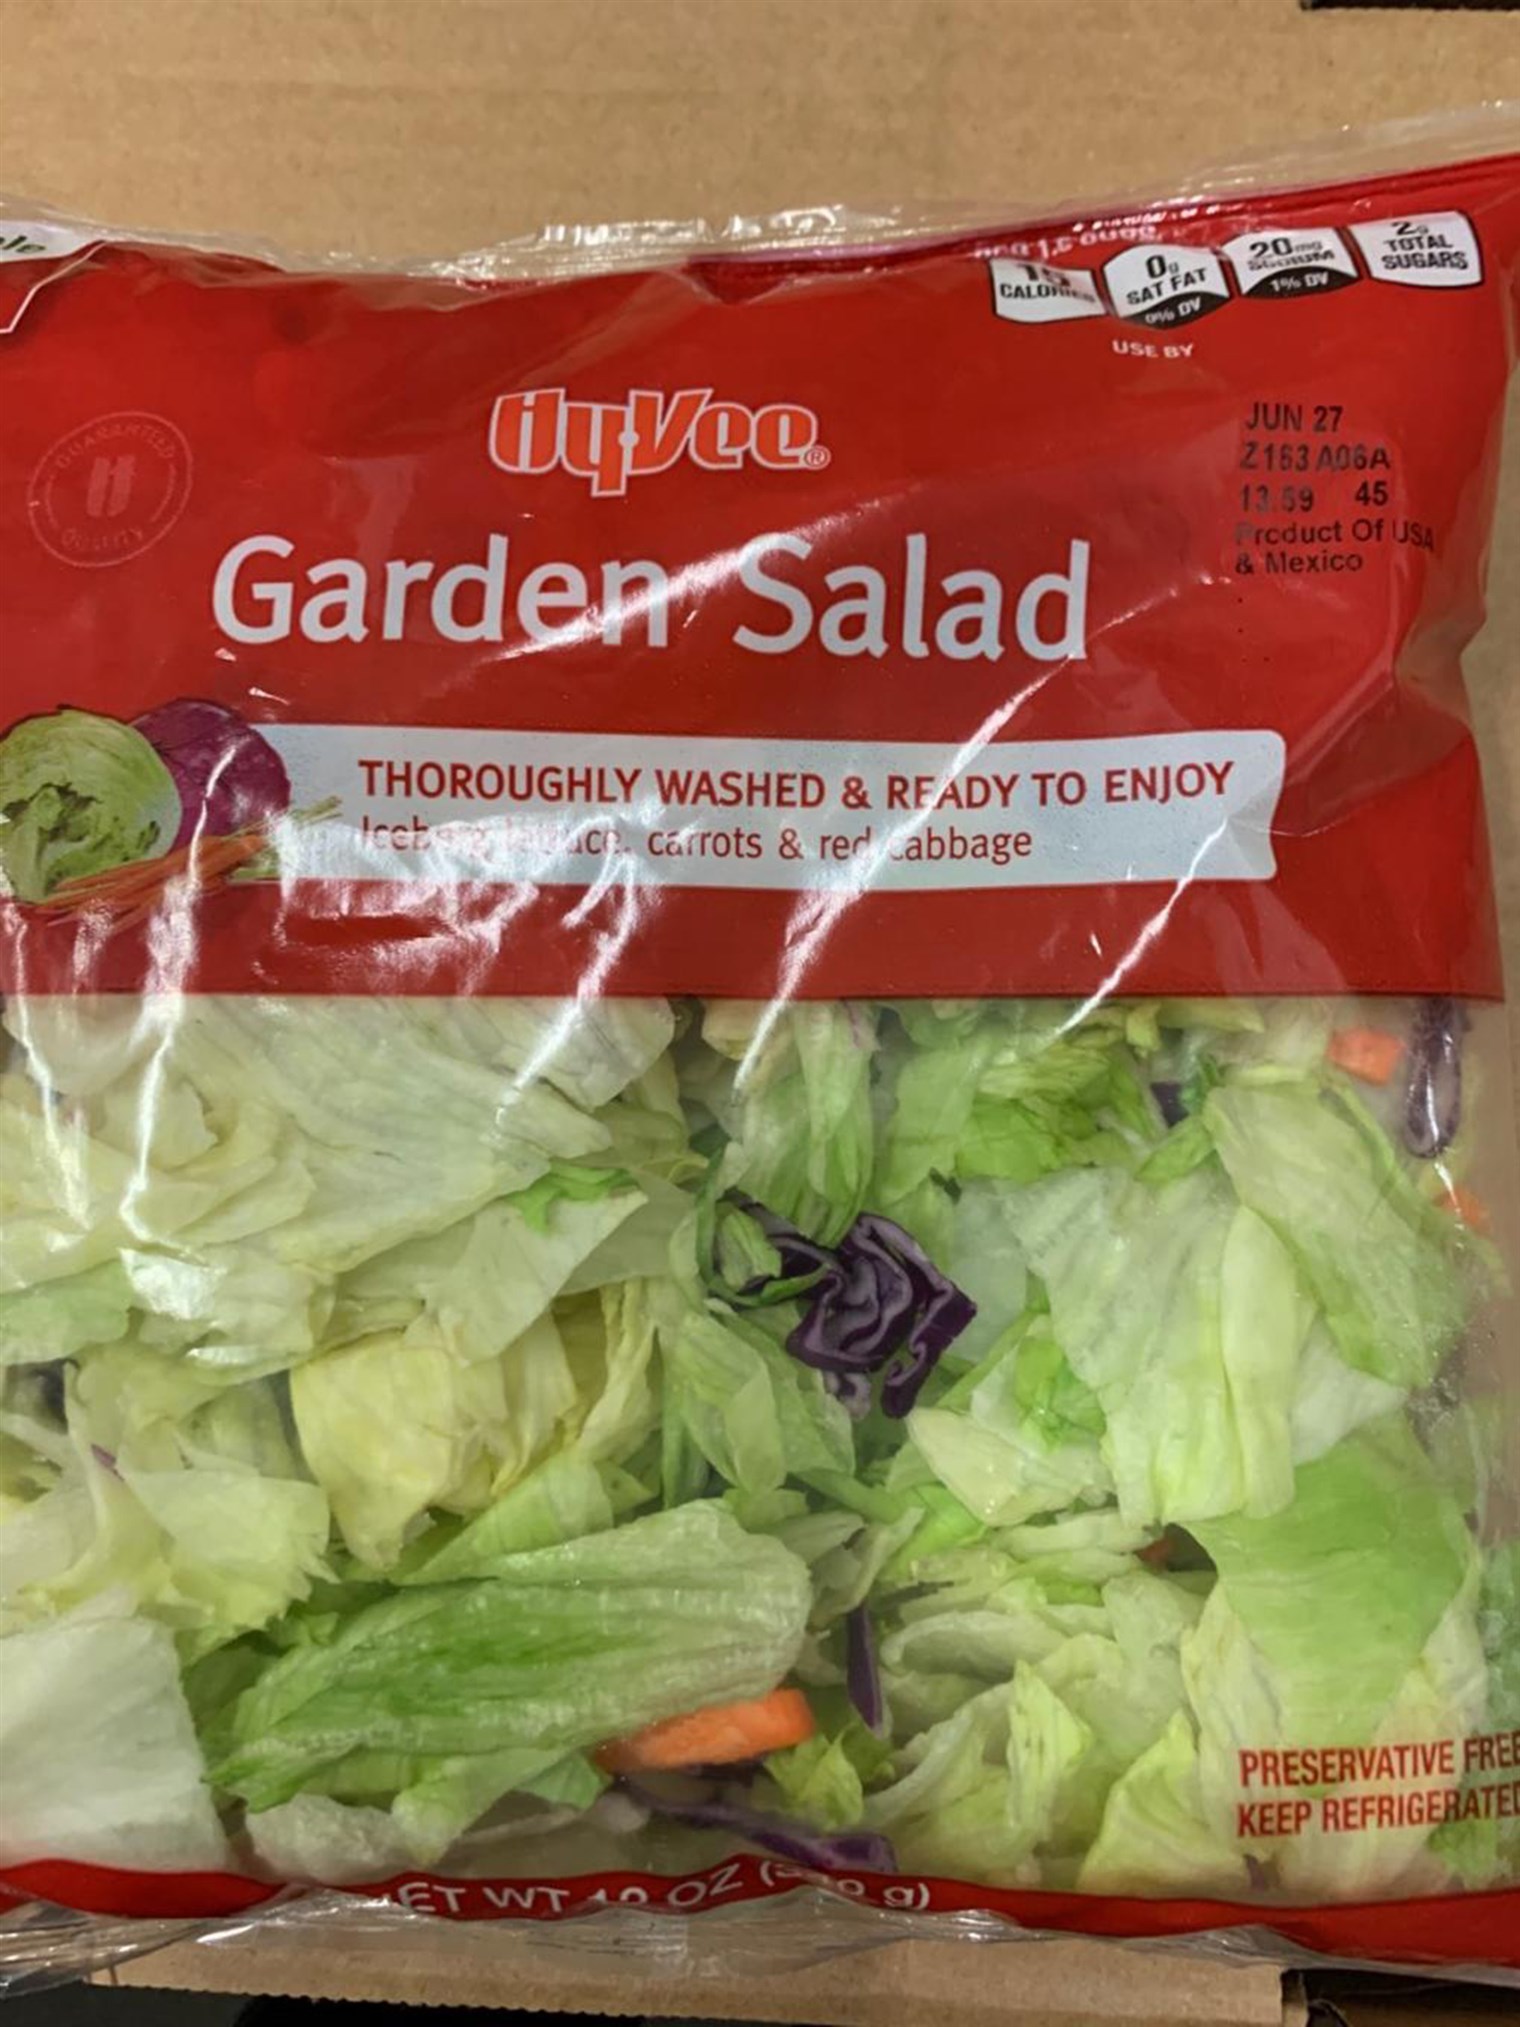 Recalled Garden Salad